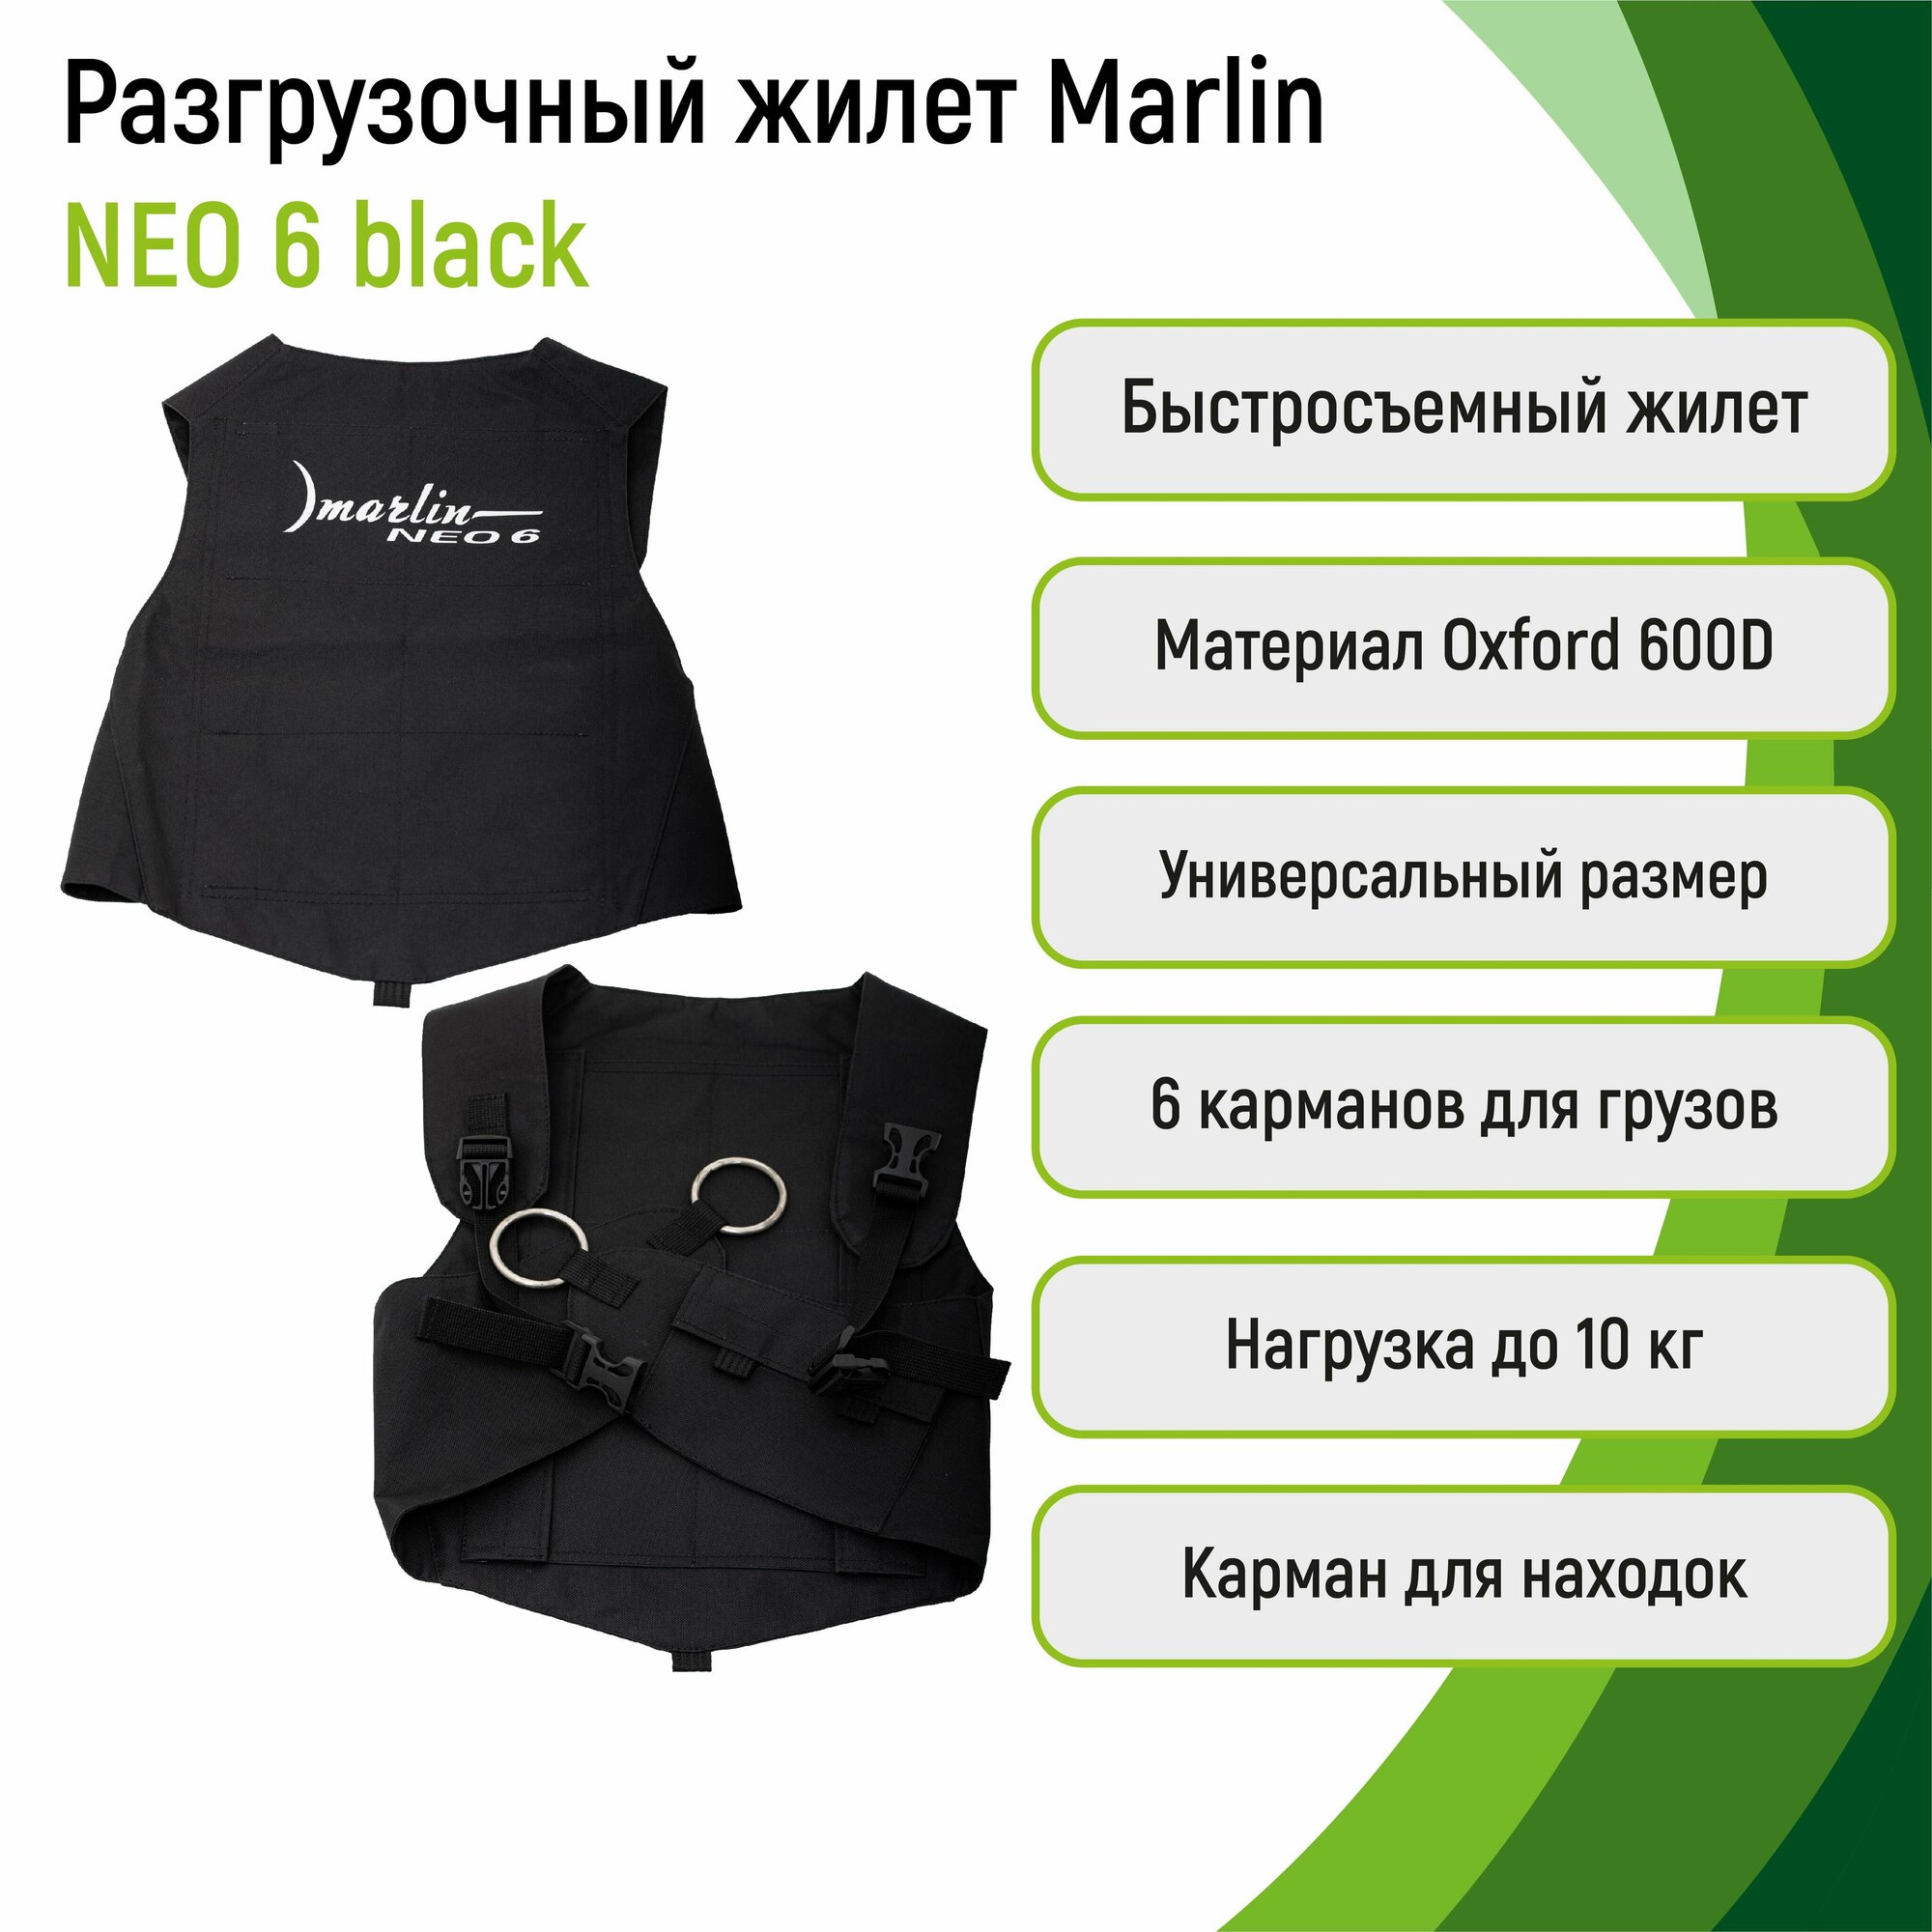 Жилет для грузов Marlin Neo 6 black